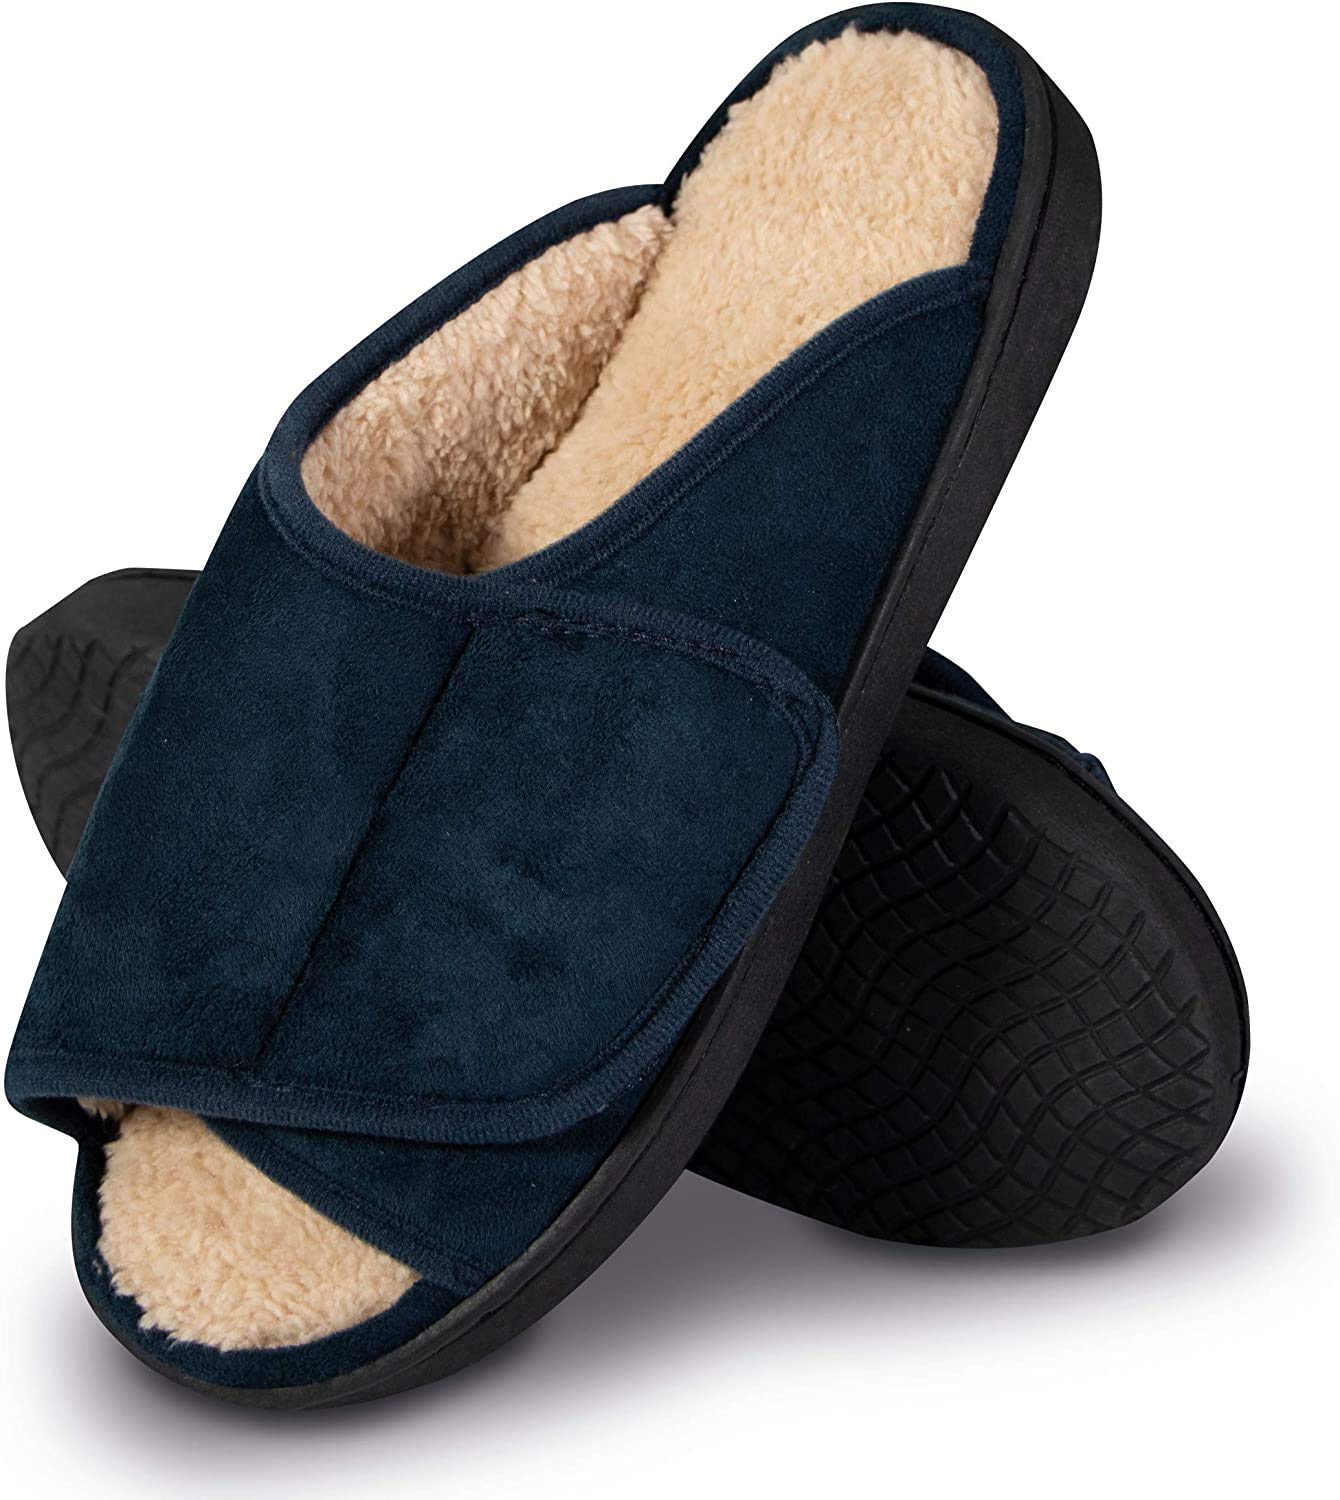 SHD Hausschuhe für Damen & Herren, warme rutschfeste Pantoffeln, bequeme Klett-Hausschuhe mit leichtem Einstieg, Memory Foam, Unisex blau (42/43)